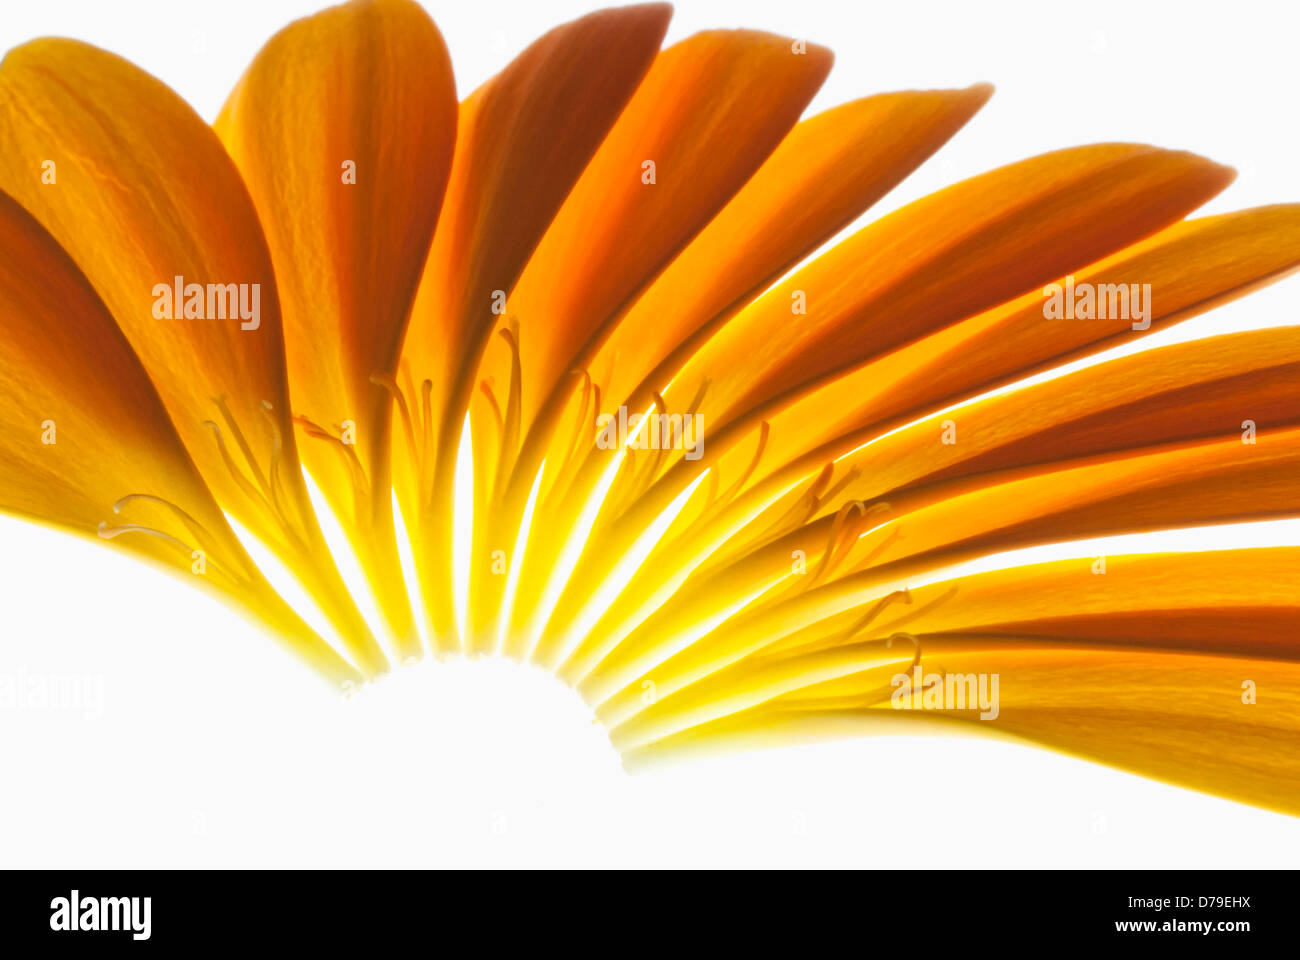 Gerbera Jamesonii "Optima" Barberton Daisy, einzelnen orangefarbenen Blütenblätter gelegt fein, um einen Halbkreis zu bilden. Stockfoto